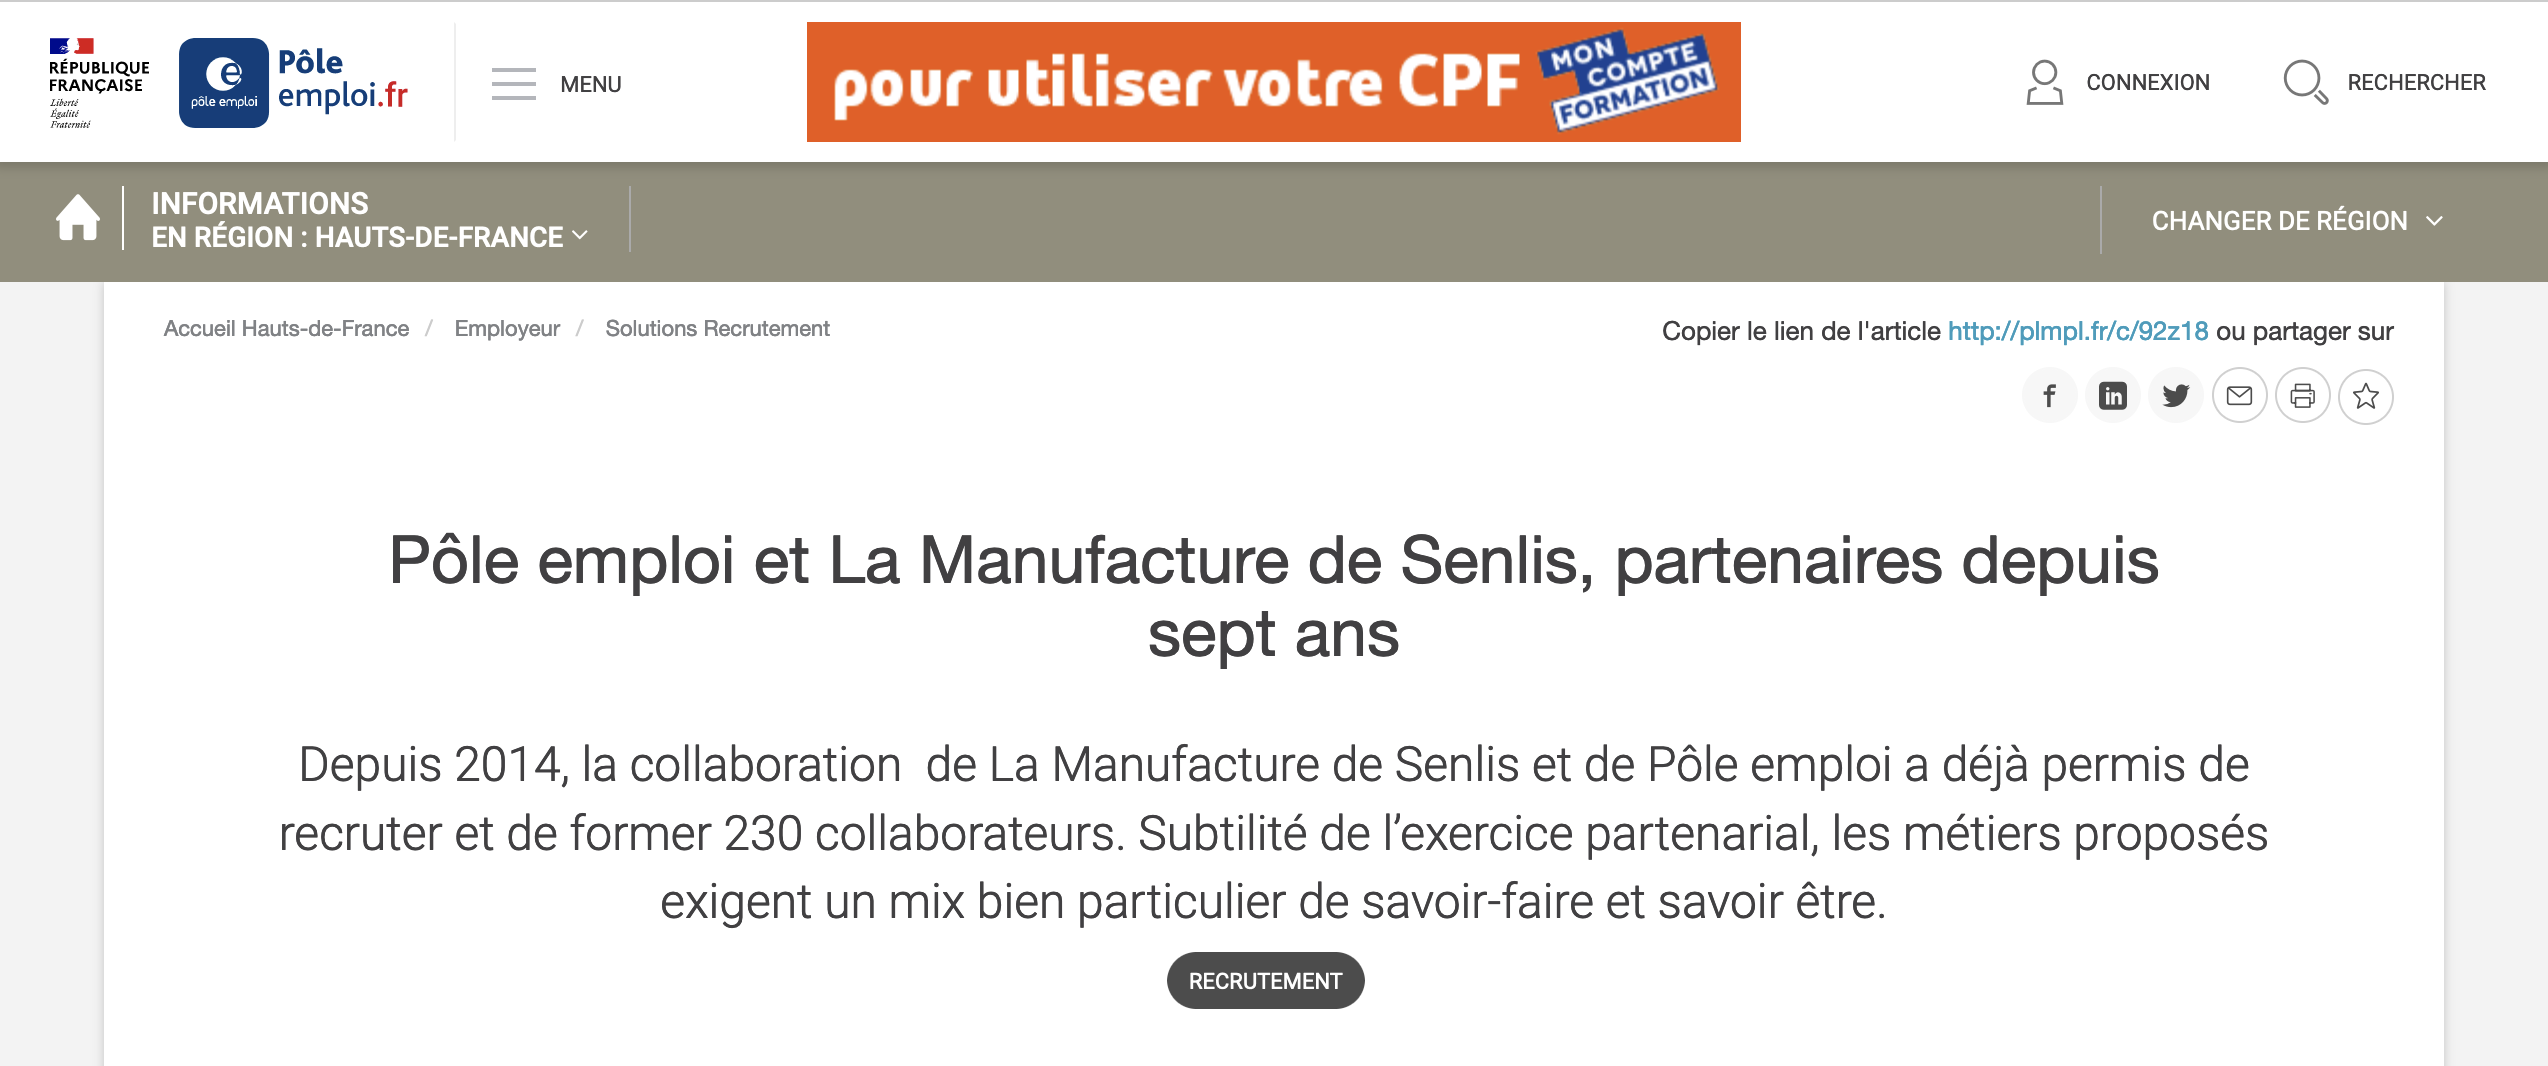 La manufacture de Senlis travaille pour Hermès et est partenaire de Pôle emploi (Source : Pôle emploi)